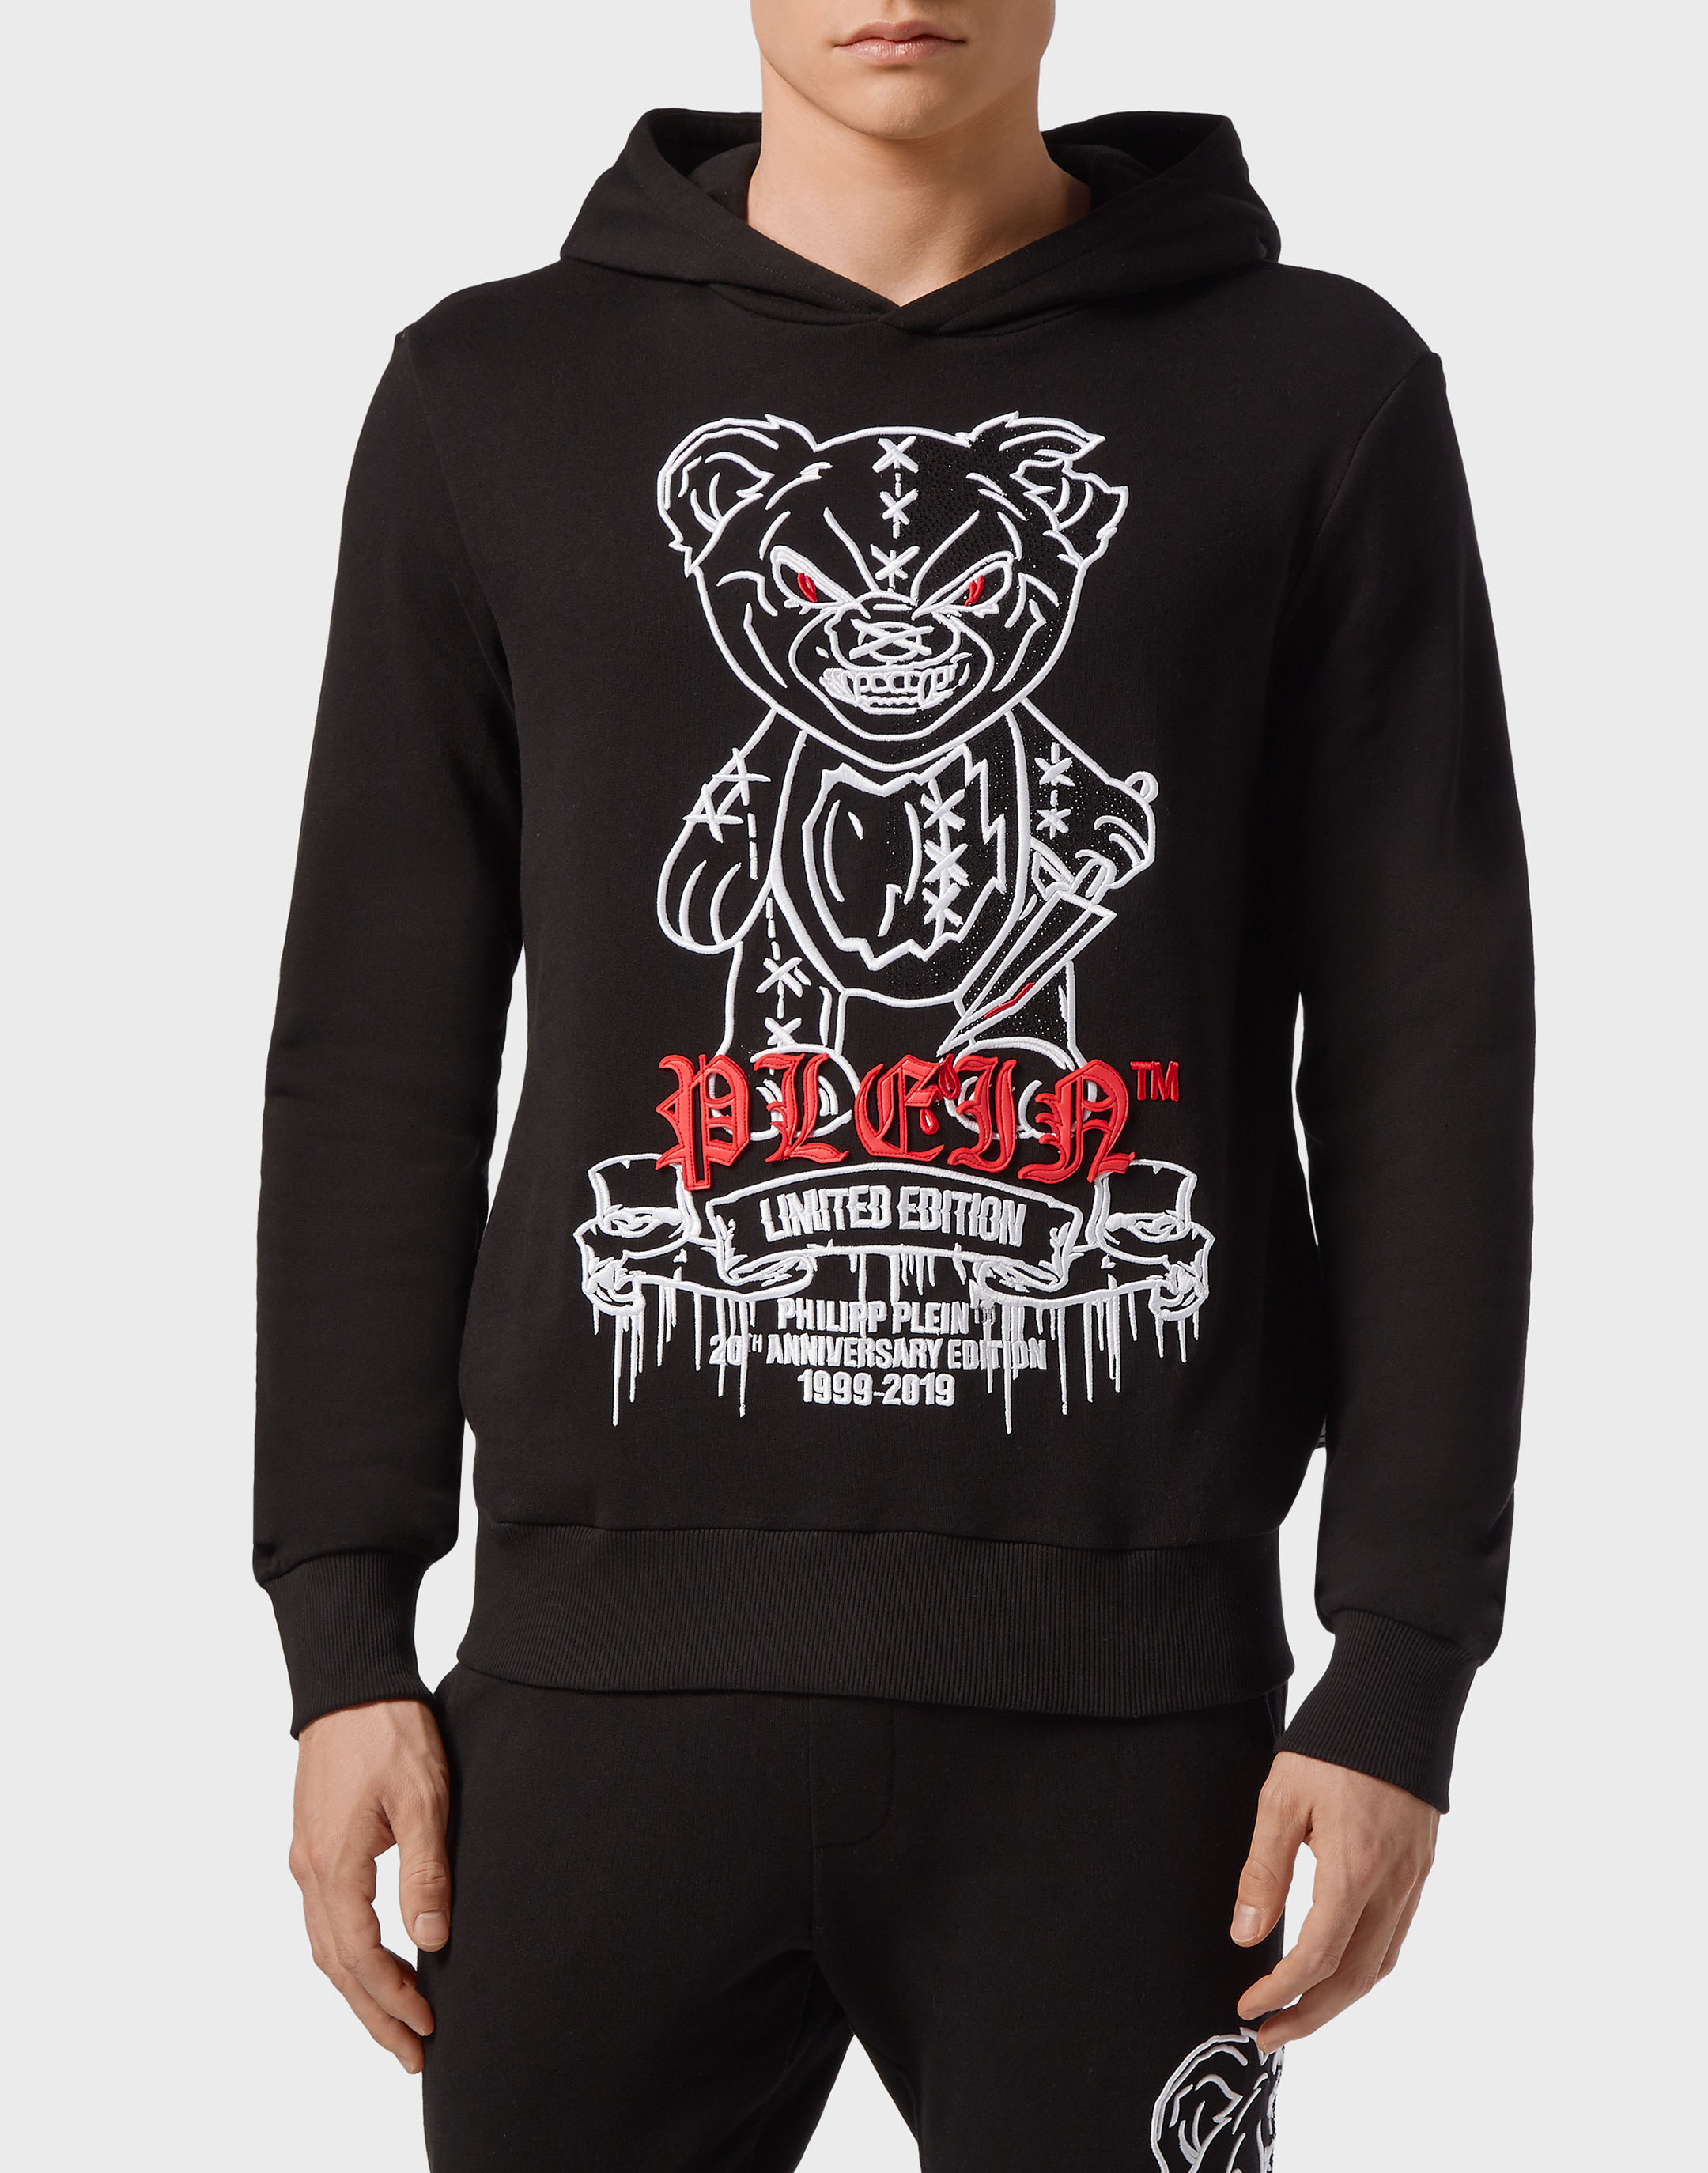 Buy > philipp plein teddy bear hoodie > in stock